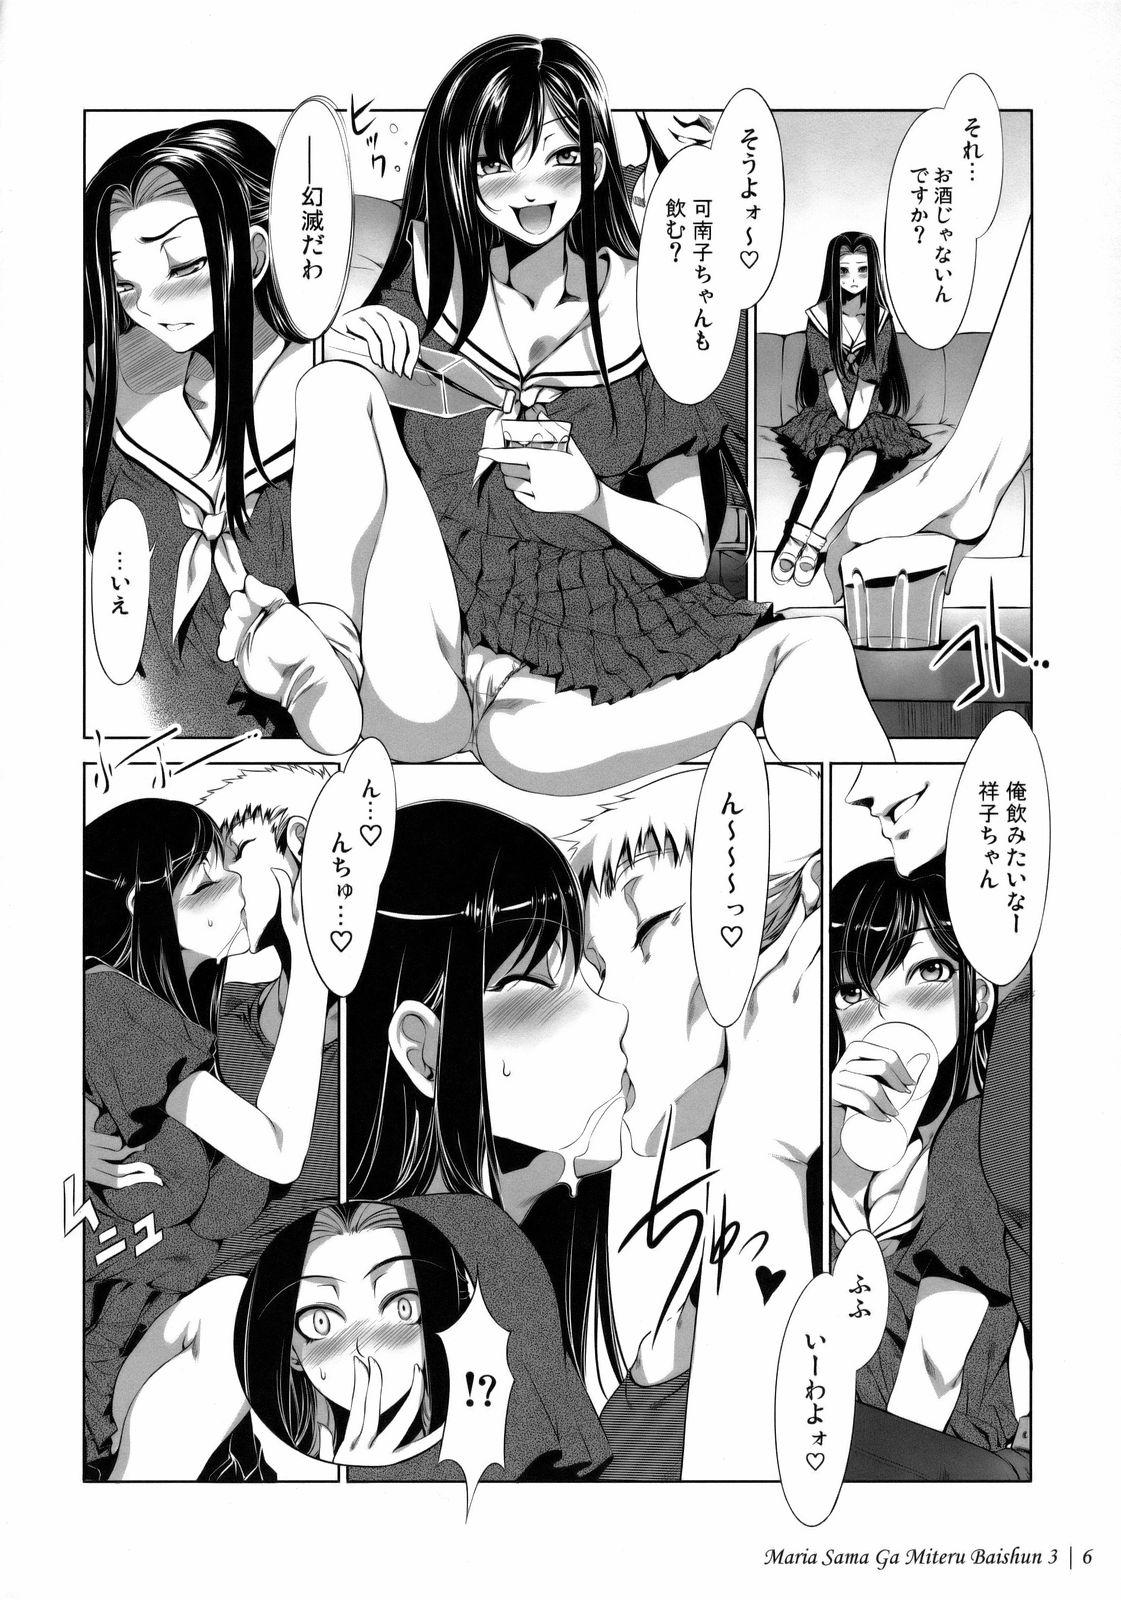 Load Maria-sama ga Miteru Baishun 3 - Maria-sama ga miteru Anime - Page 9